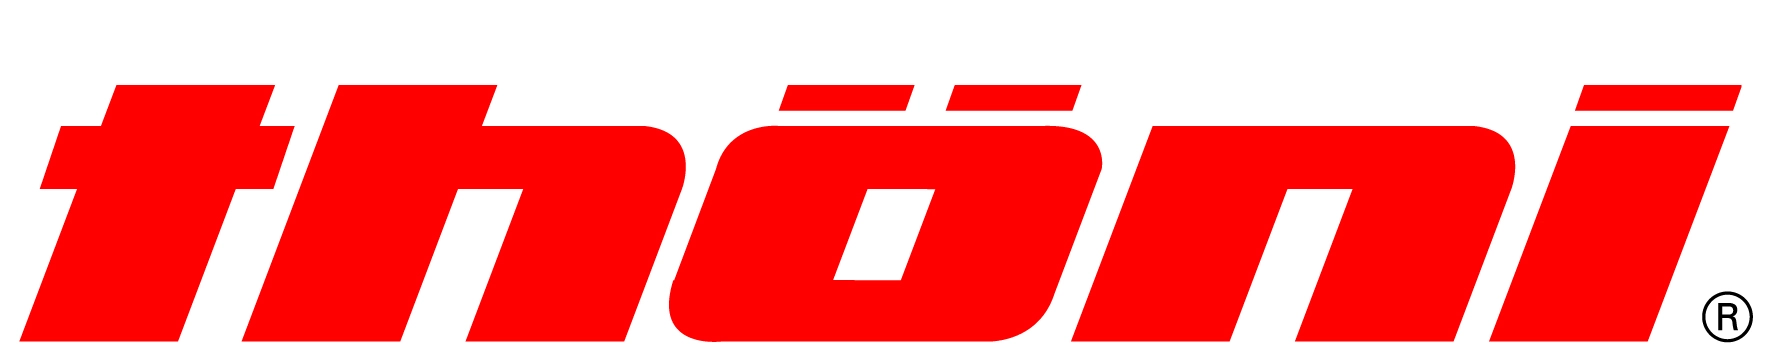 logo of costumer